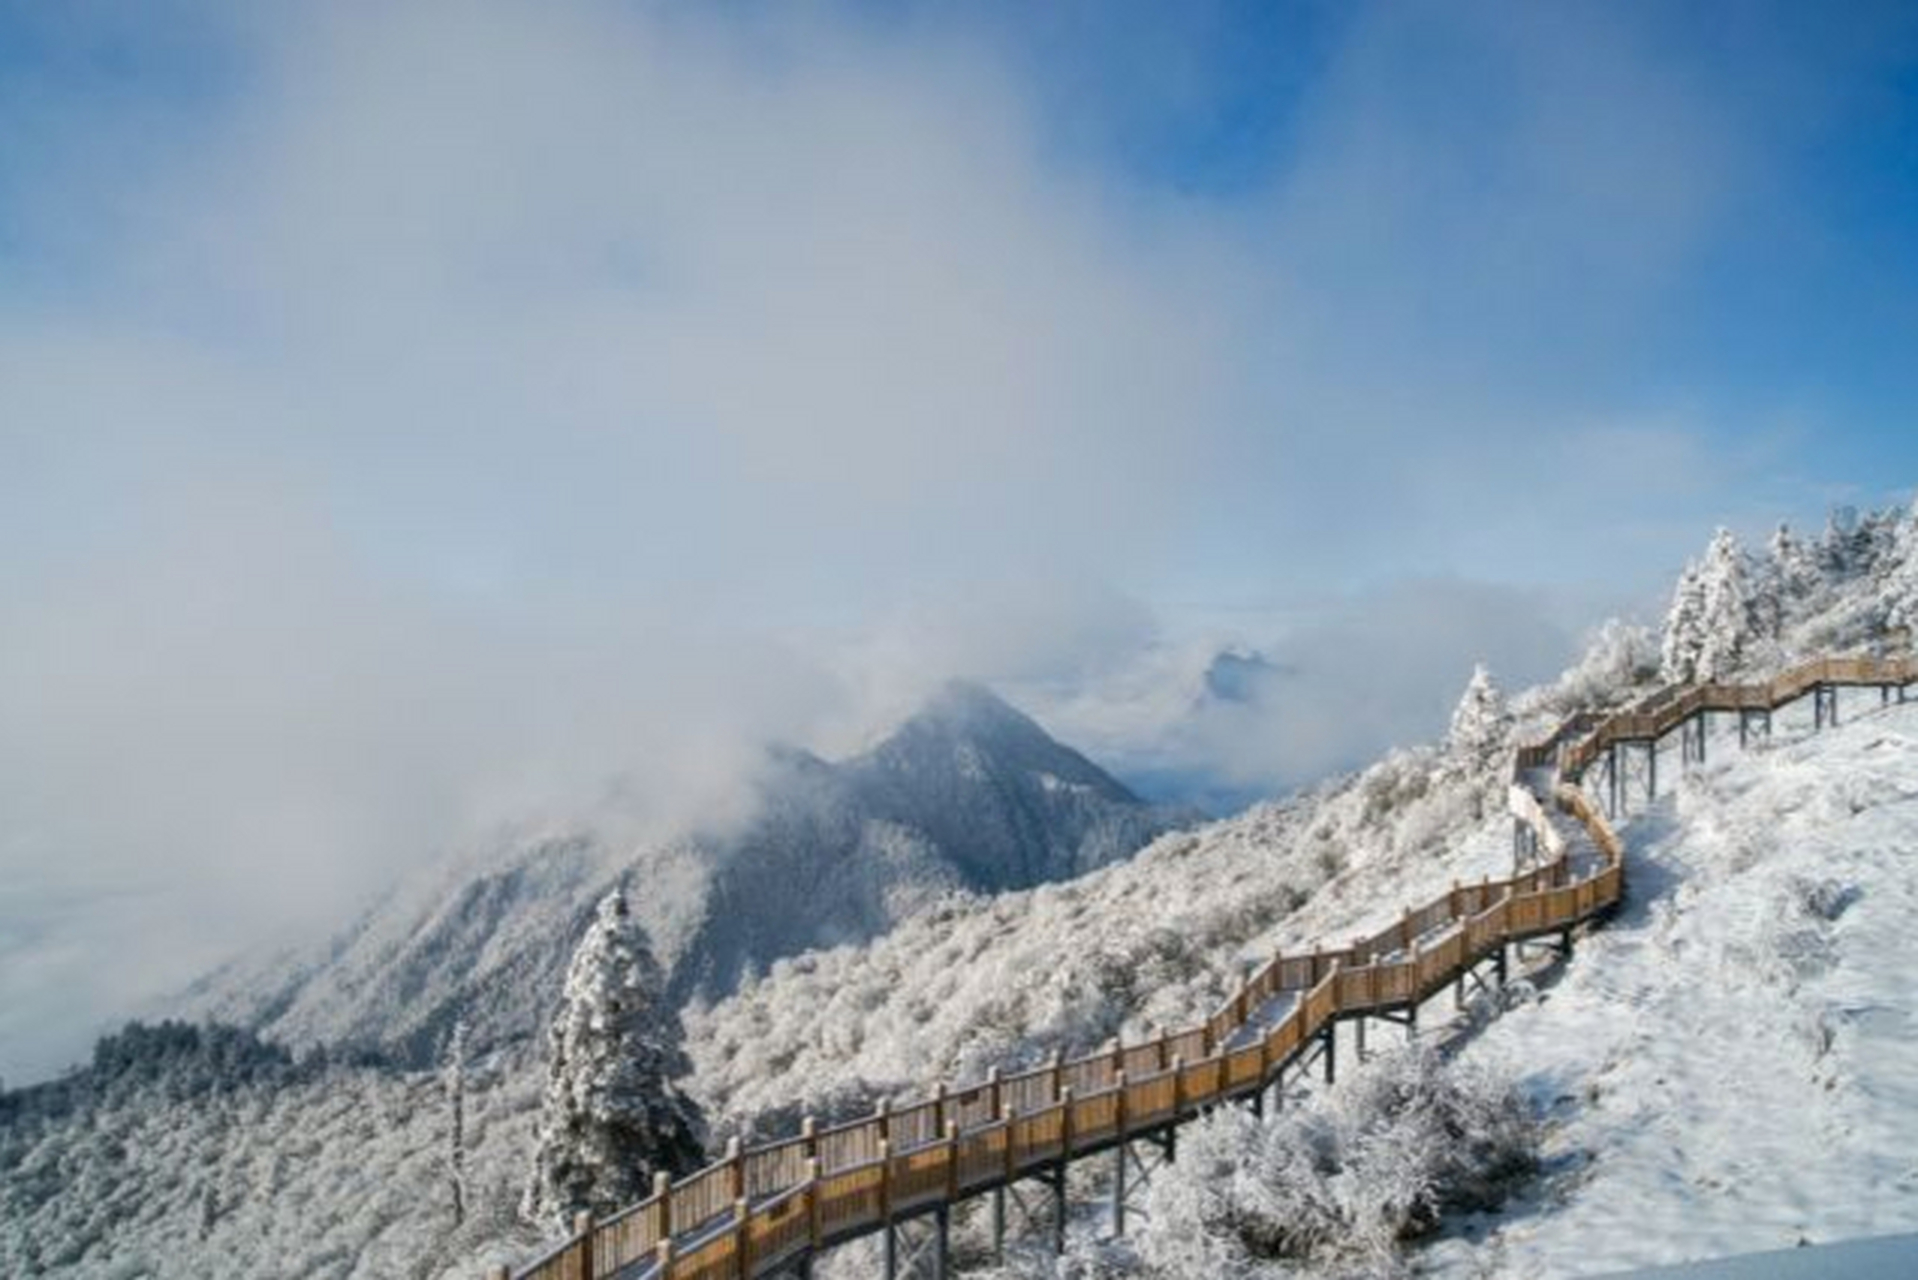 成都西岭雪山:它的最高峰大雪塘海拔高达5364米,最特别的是这里整年都